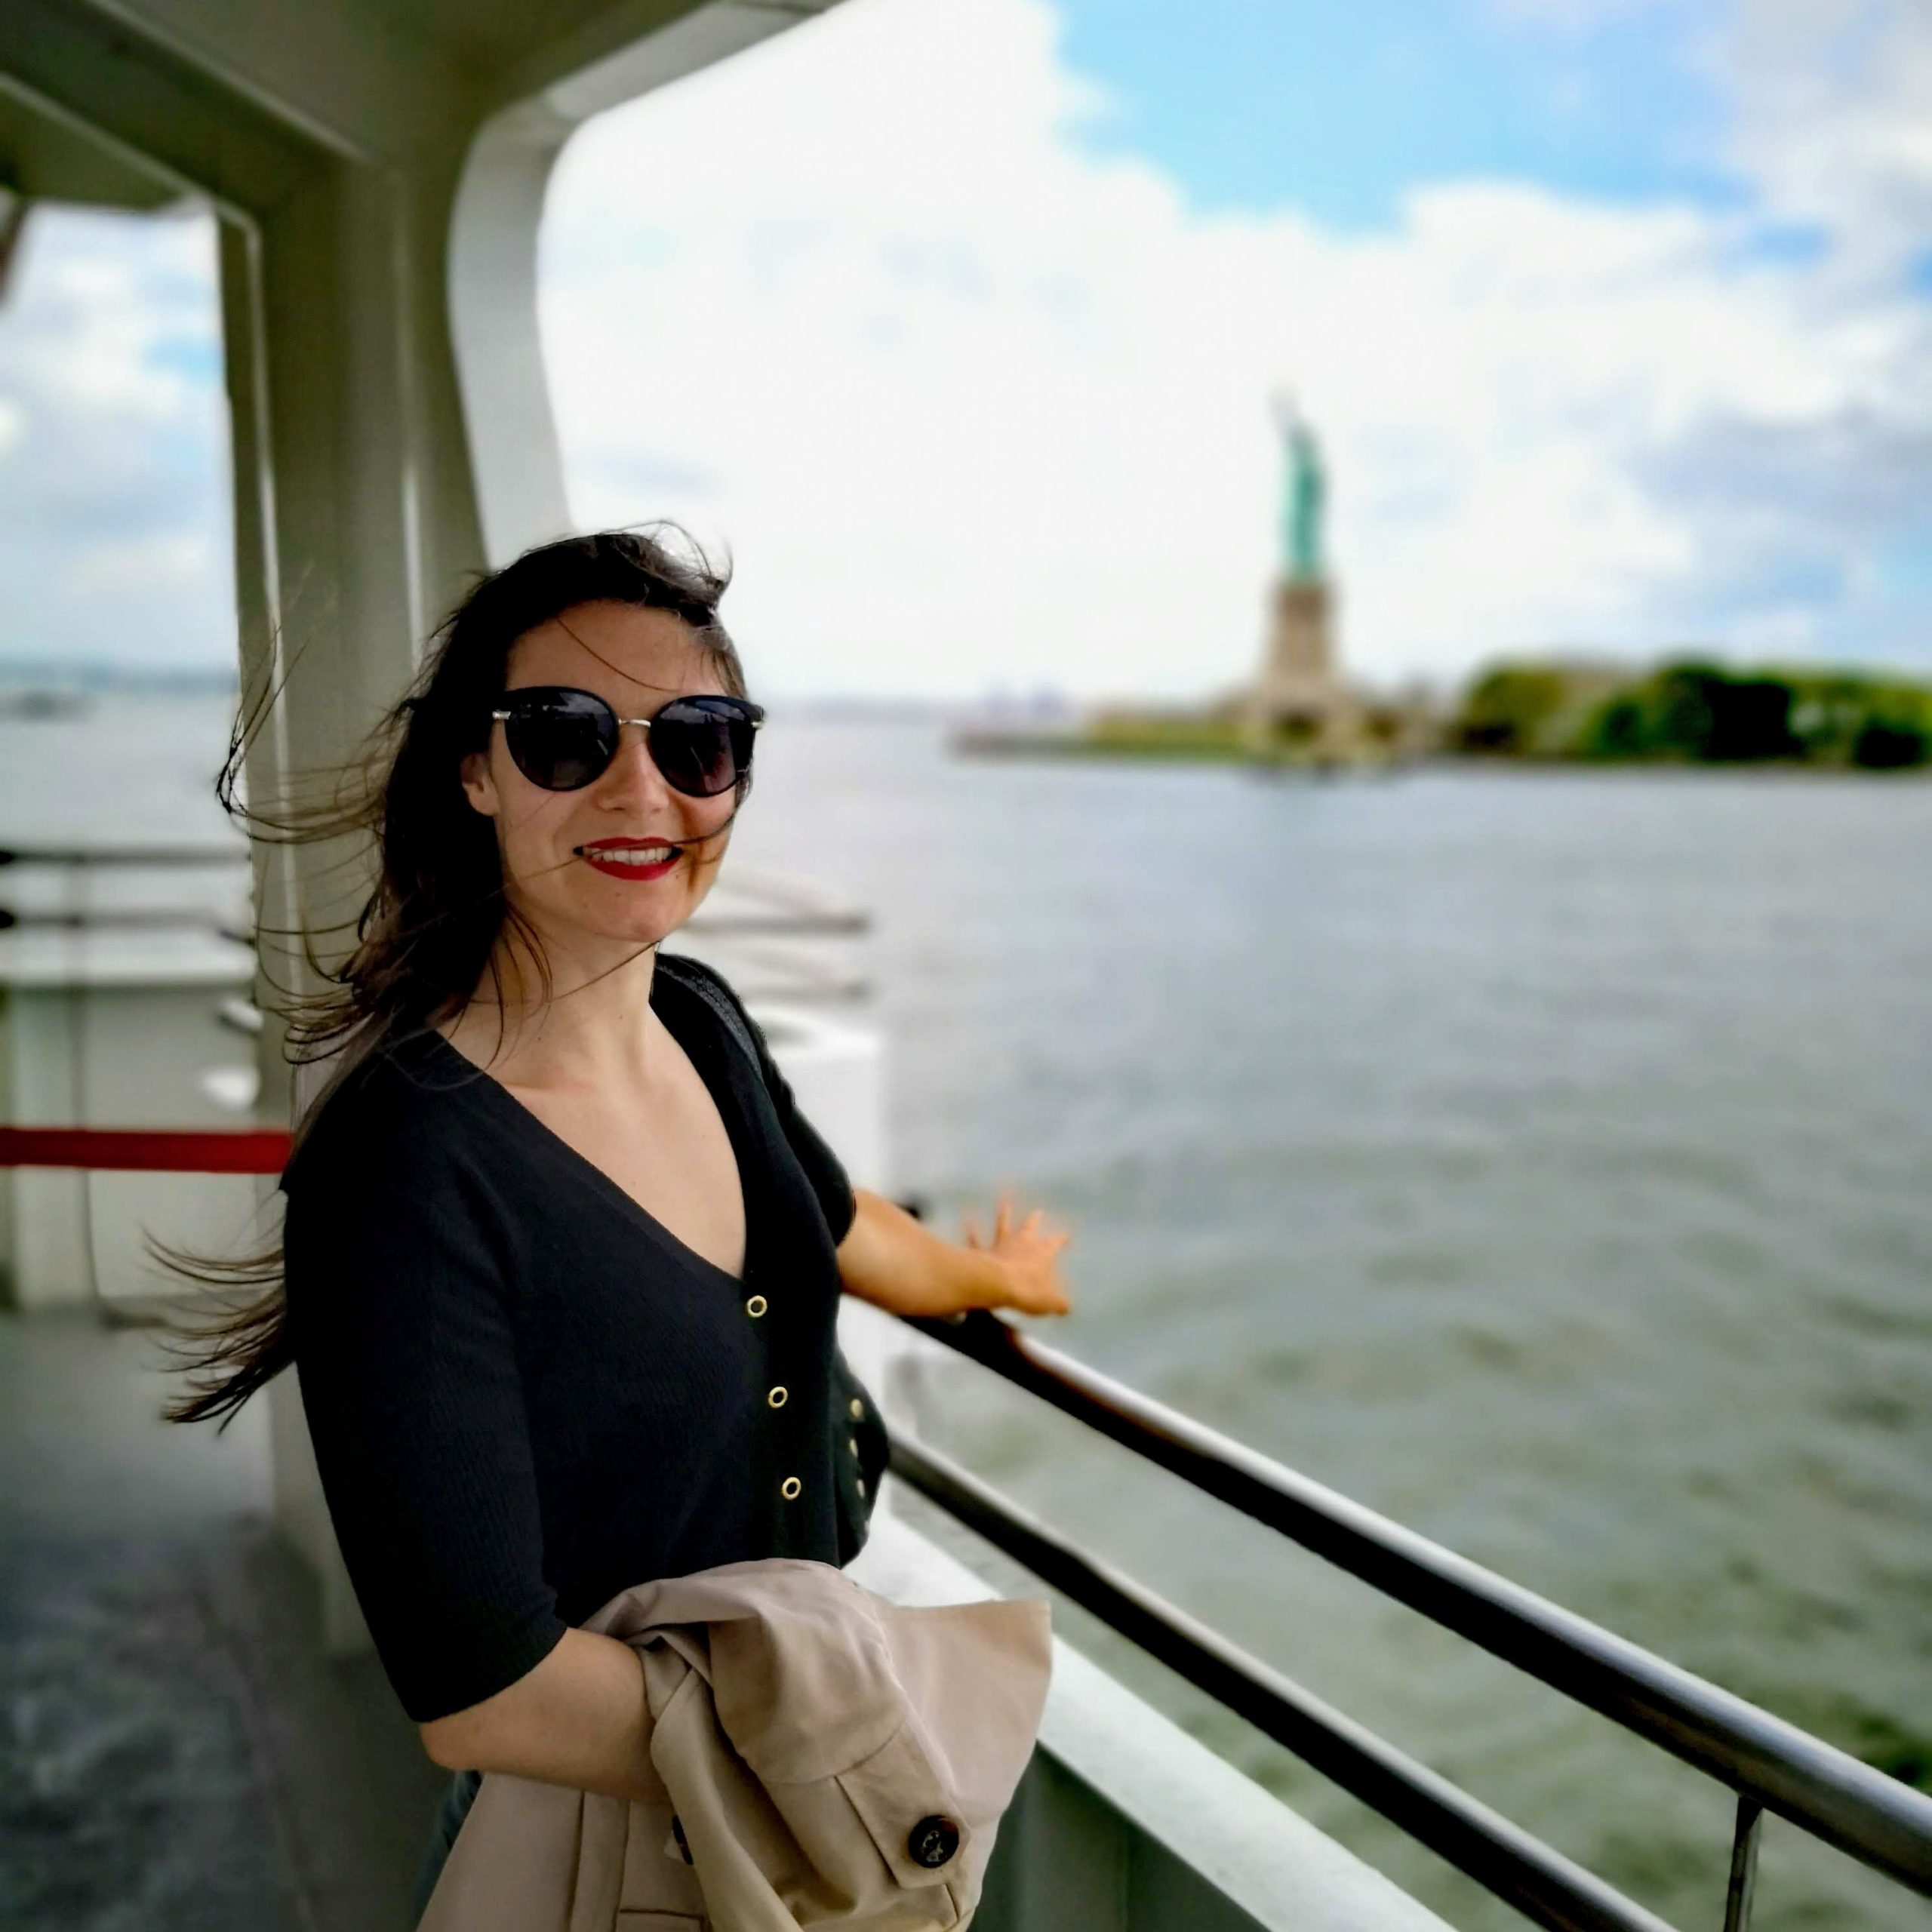 NYC Statue of liberty - Staten Island